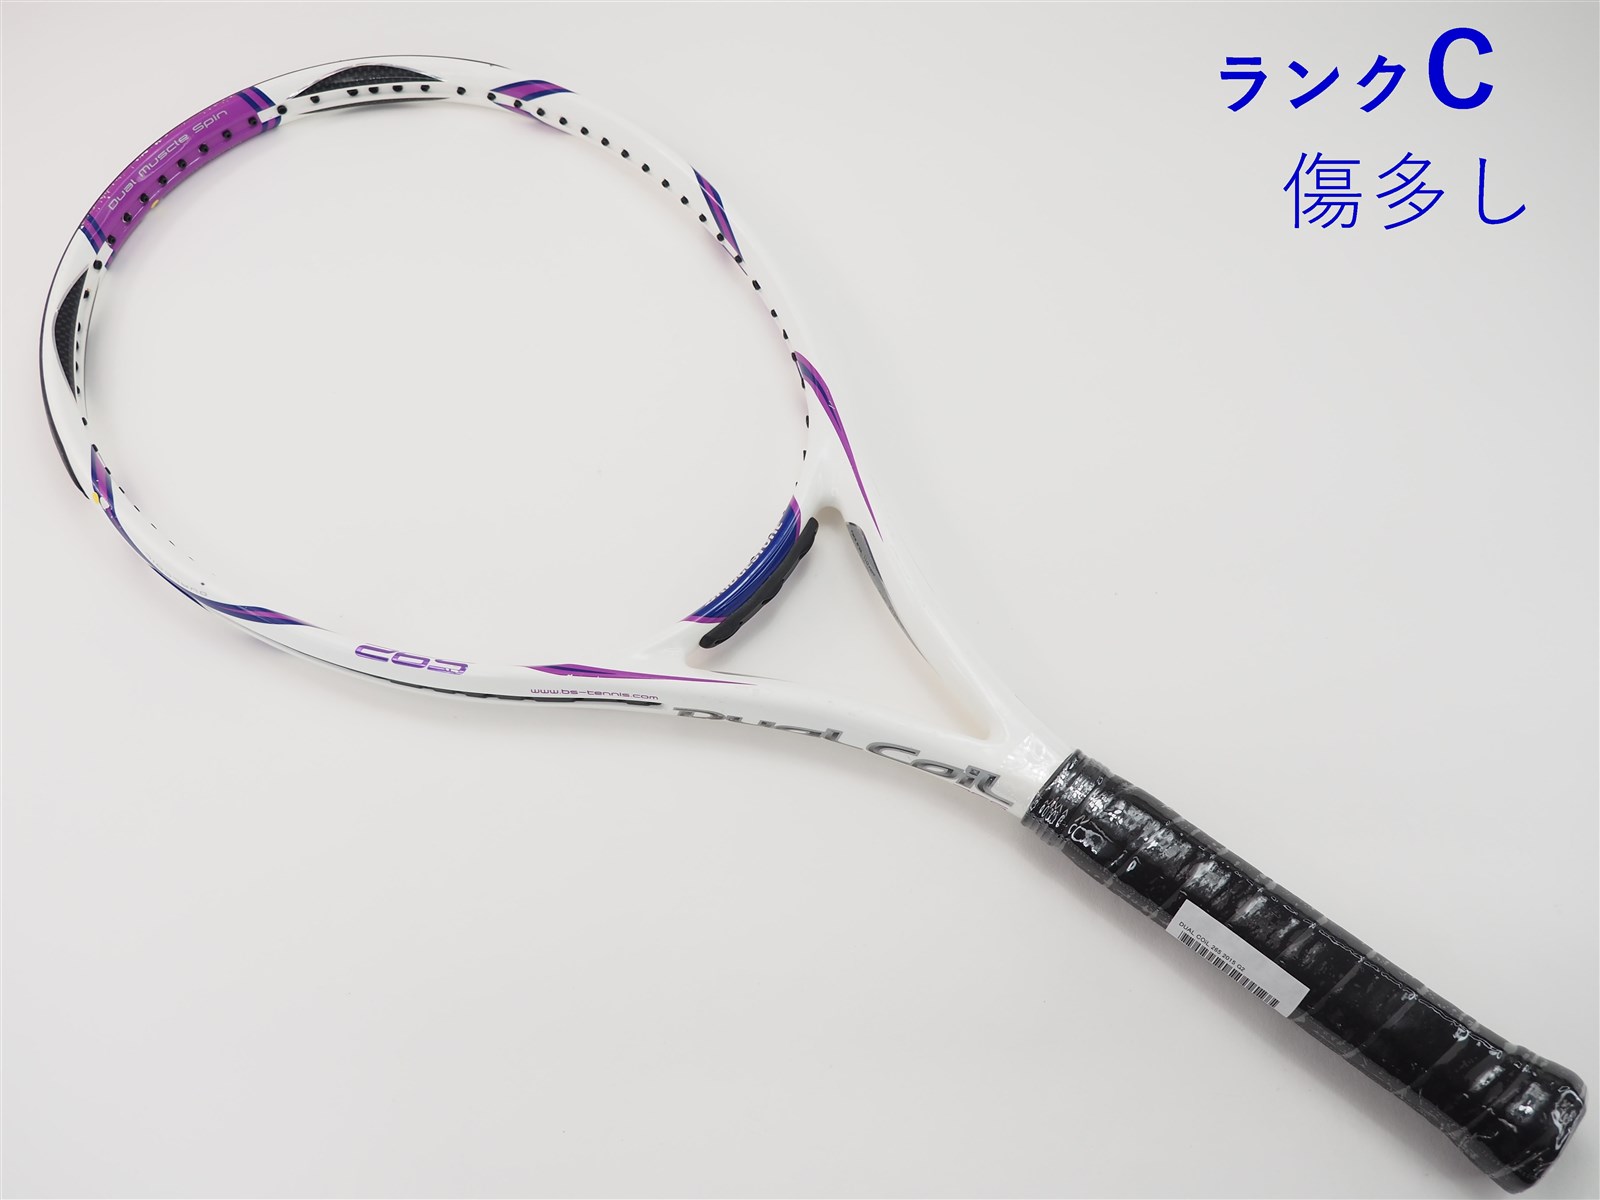 【中古】ブリヂストン デュアル コイル 265 2015年モデルBRIDGESTONE DUAL COiL 265 2015(G2)【中古  テニスラケット】【送料無料】